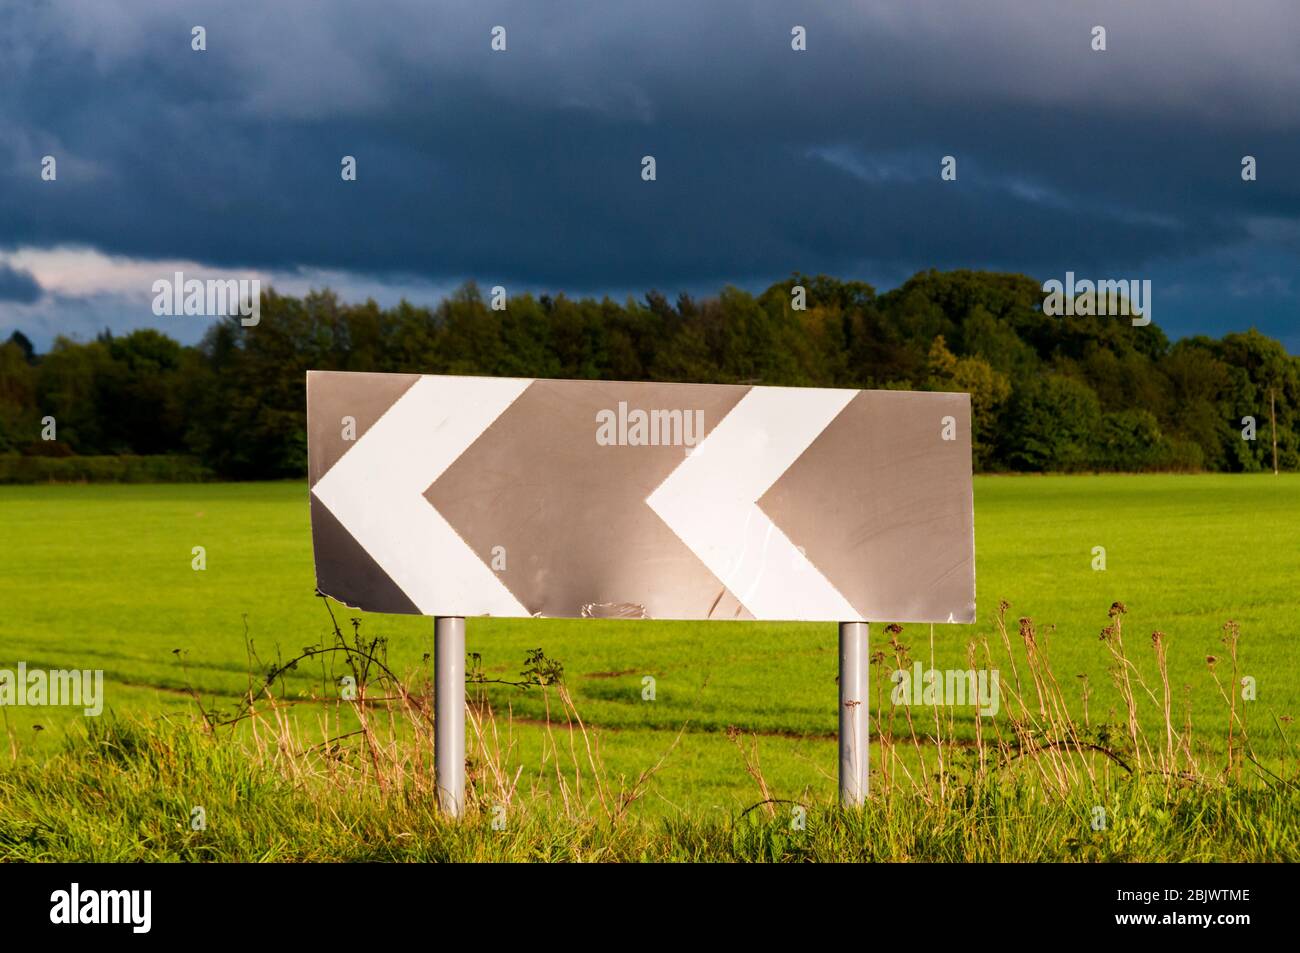 Un panneau de signalisation à chevron met en garde contre un virage serré sur une route de campagne, avec des nuages sombres derrière. Banque D'Images